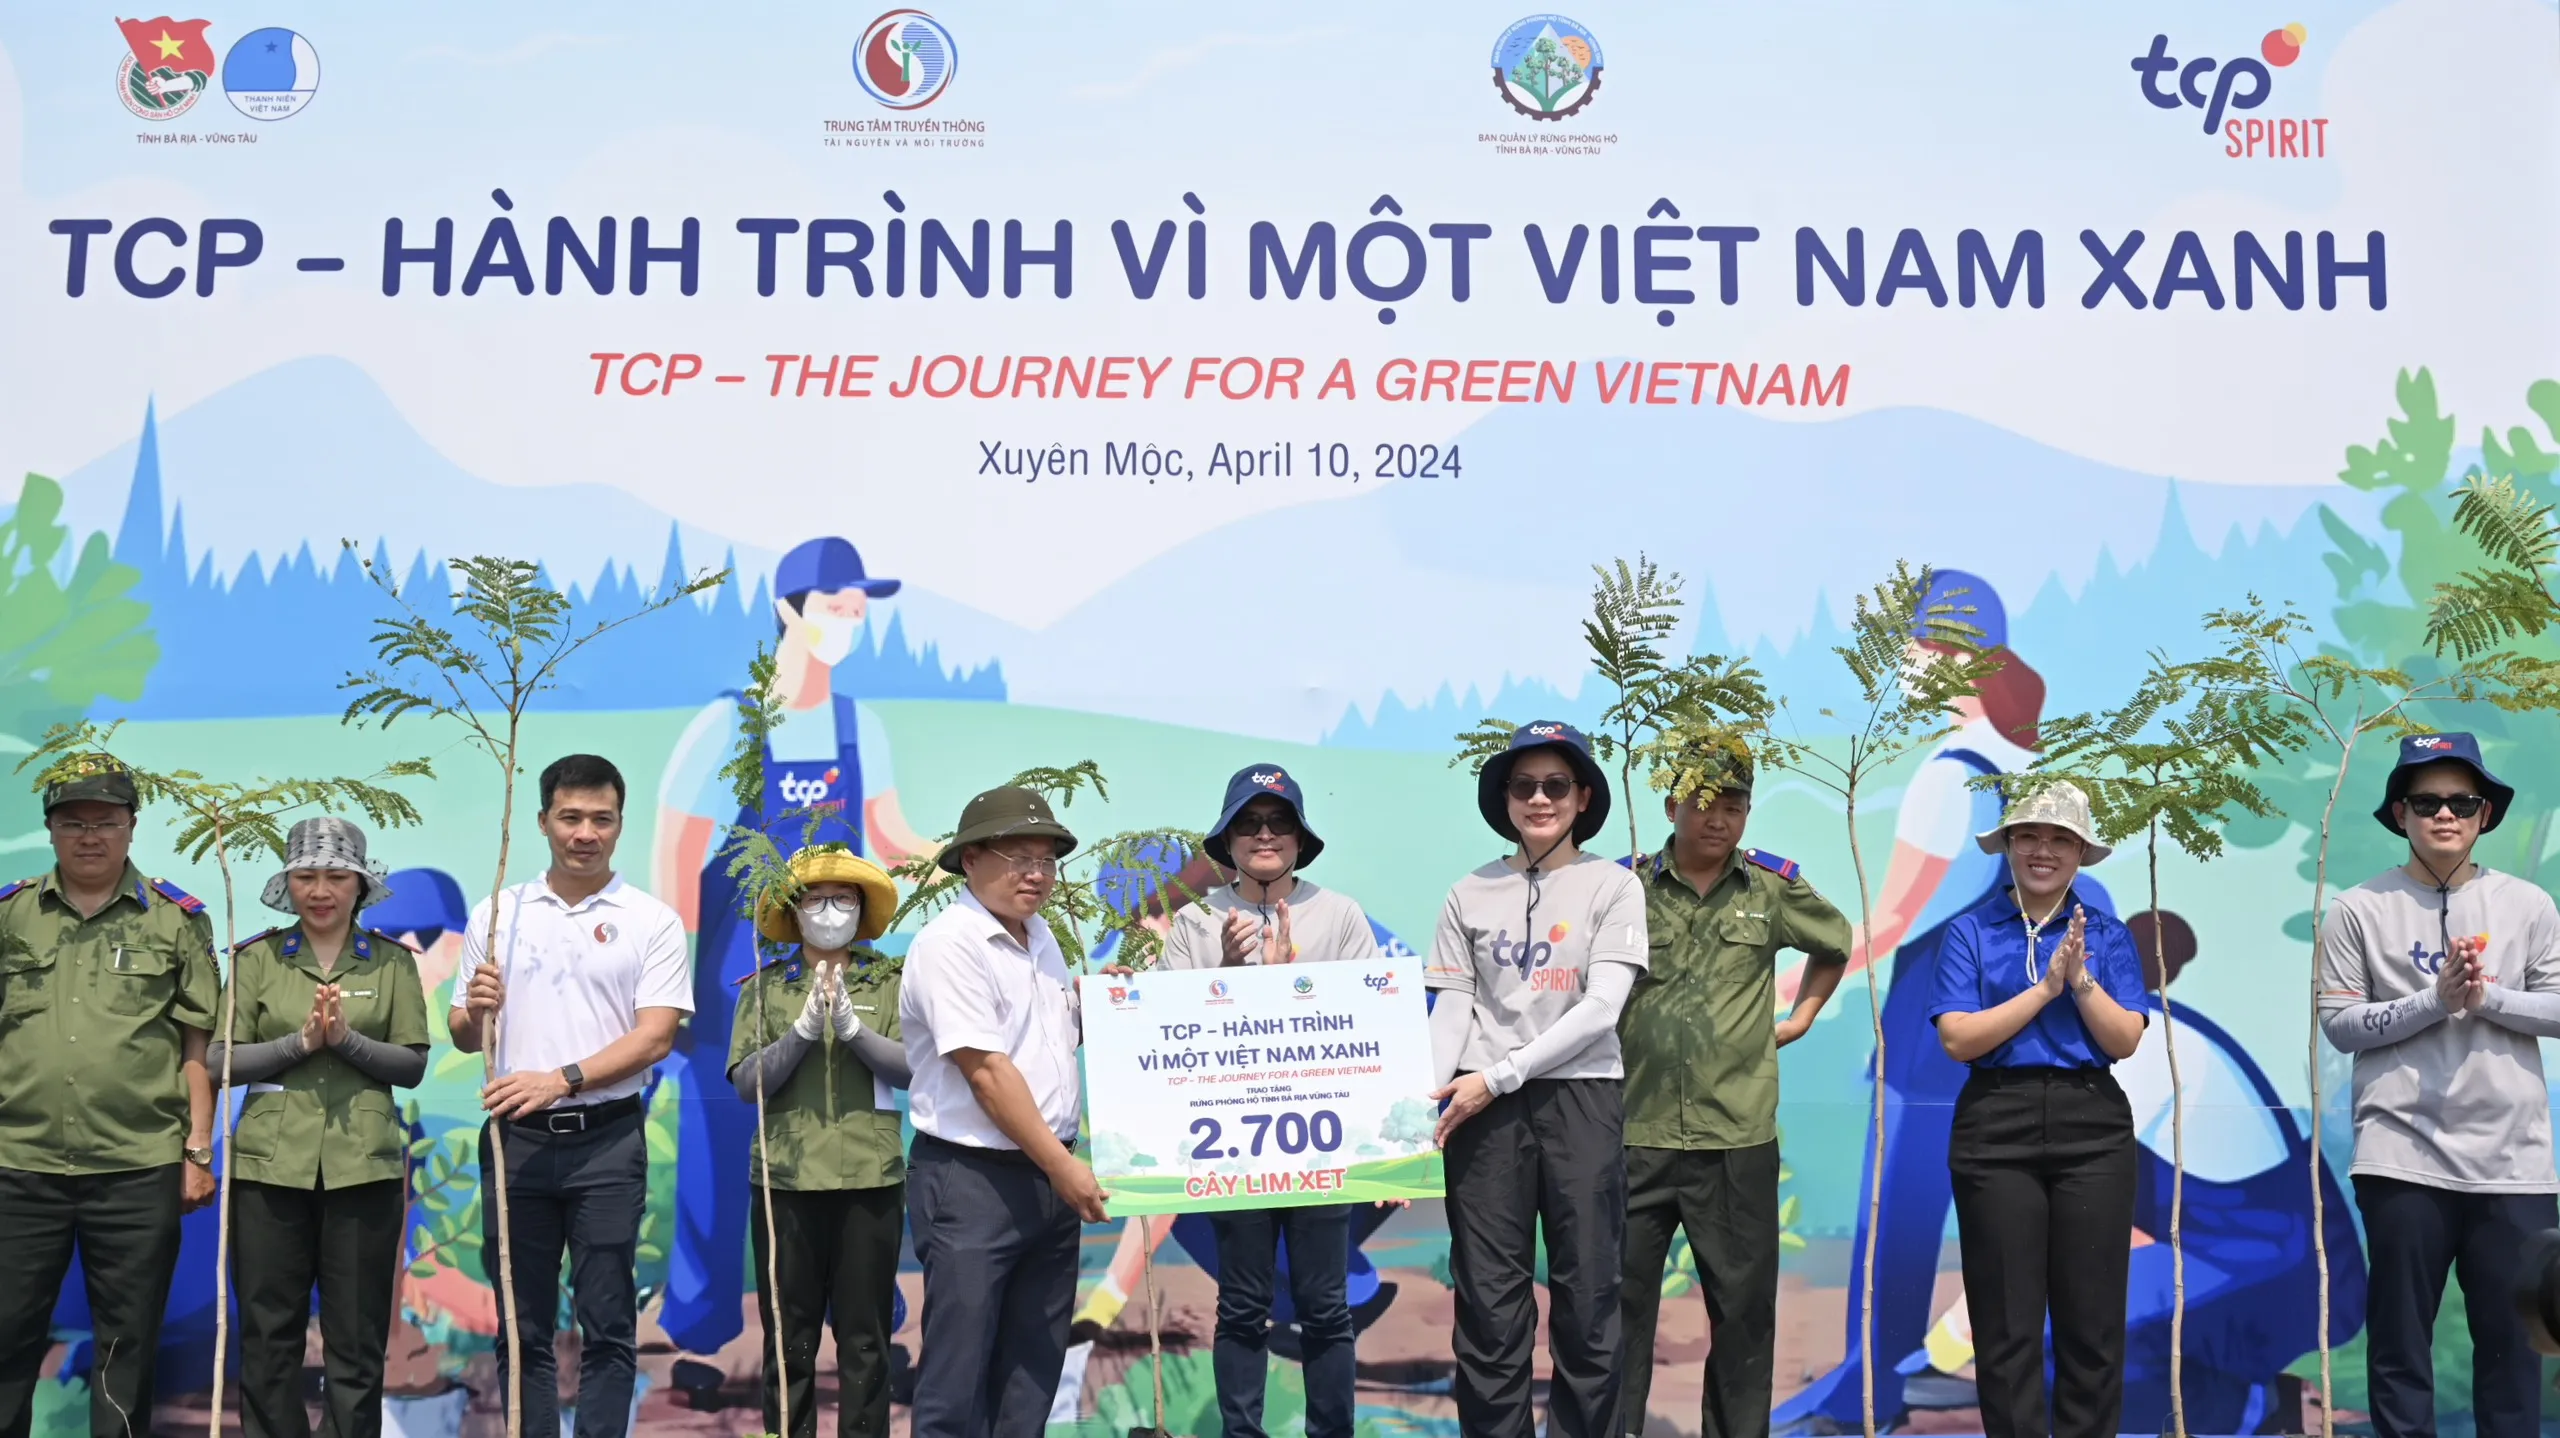 Khởi động chương trình “TCP – Hành trình vì một Việt Nam xanh” chung sức trồng 2,700 cây xanh tại tỉnh Bà Rịa – Vũng Tàu